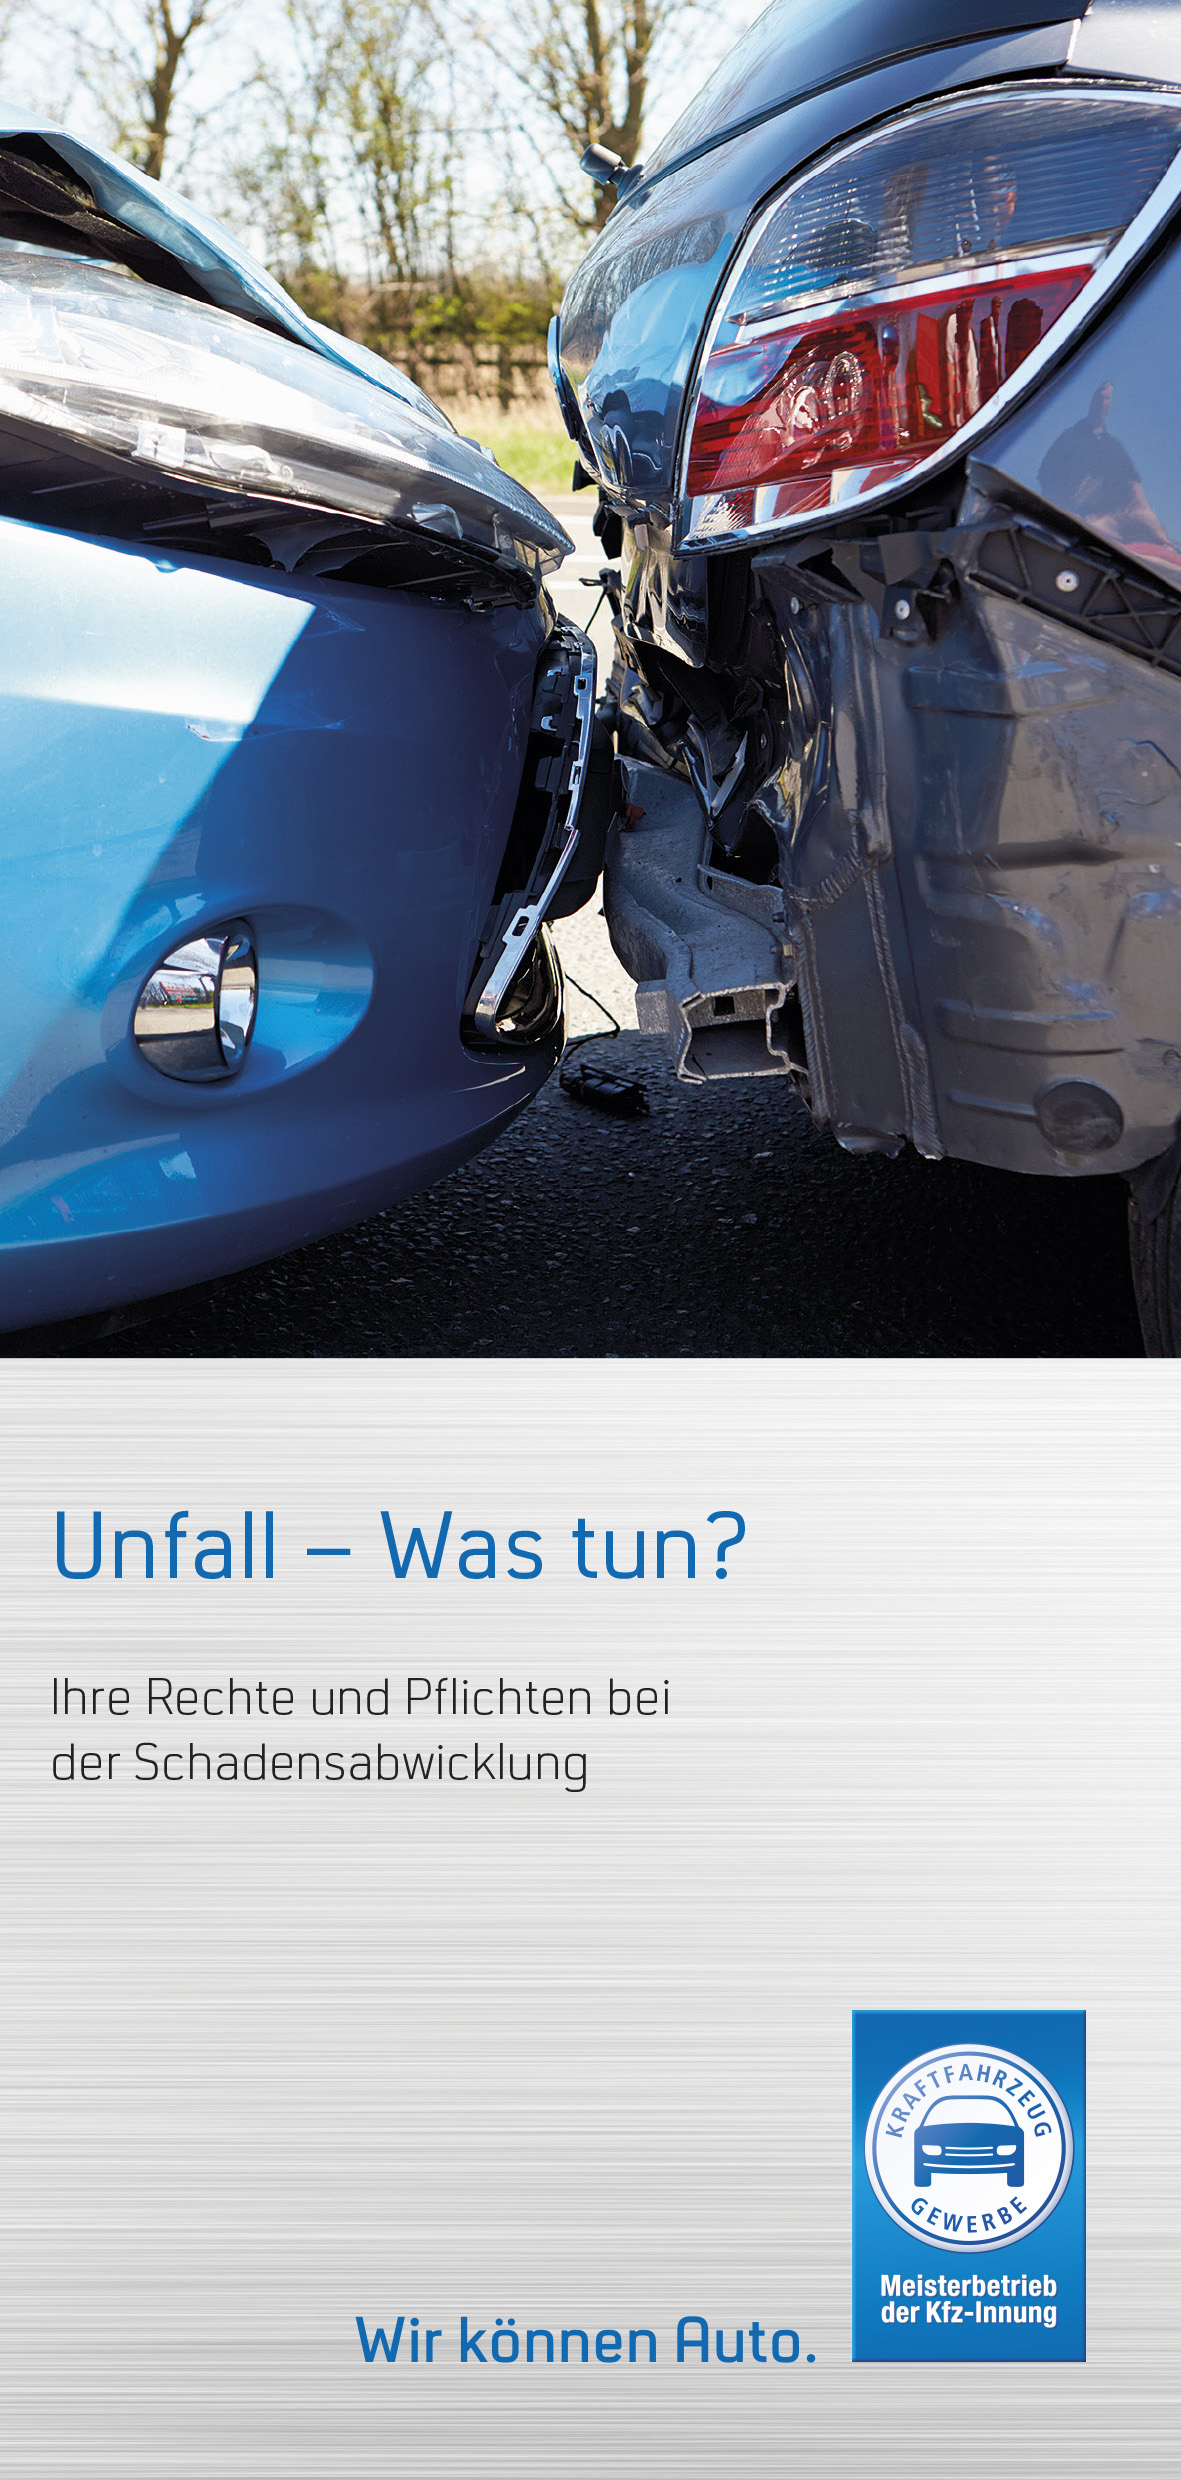 Flyer "Unfall - was tun?" inkl. Unfallbericht